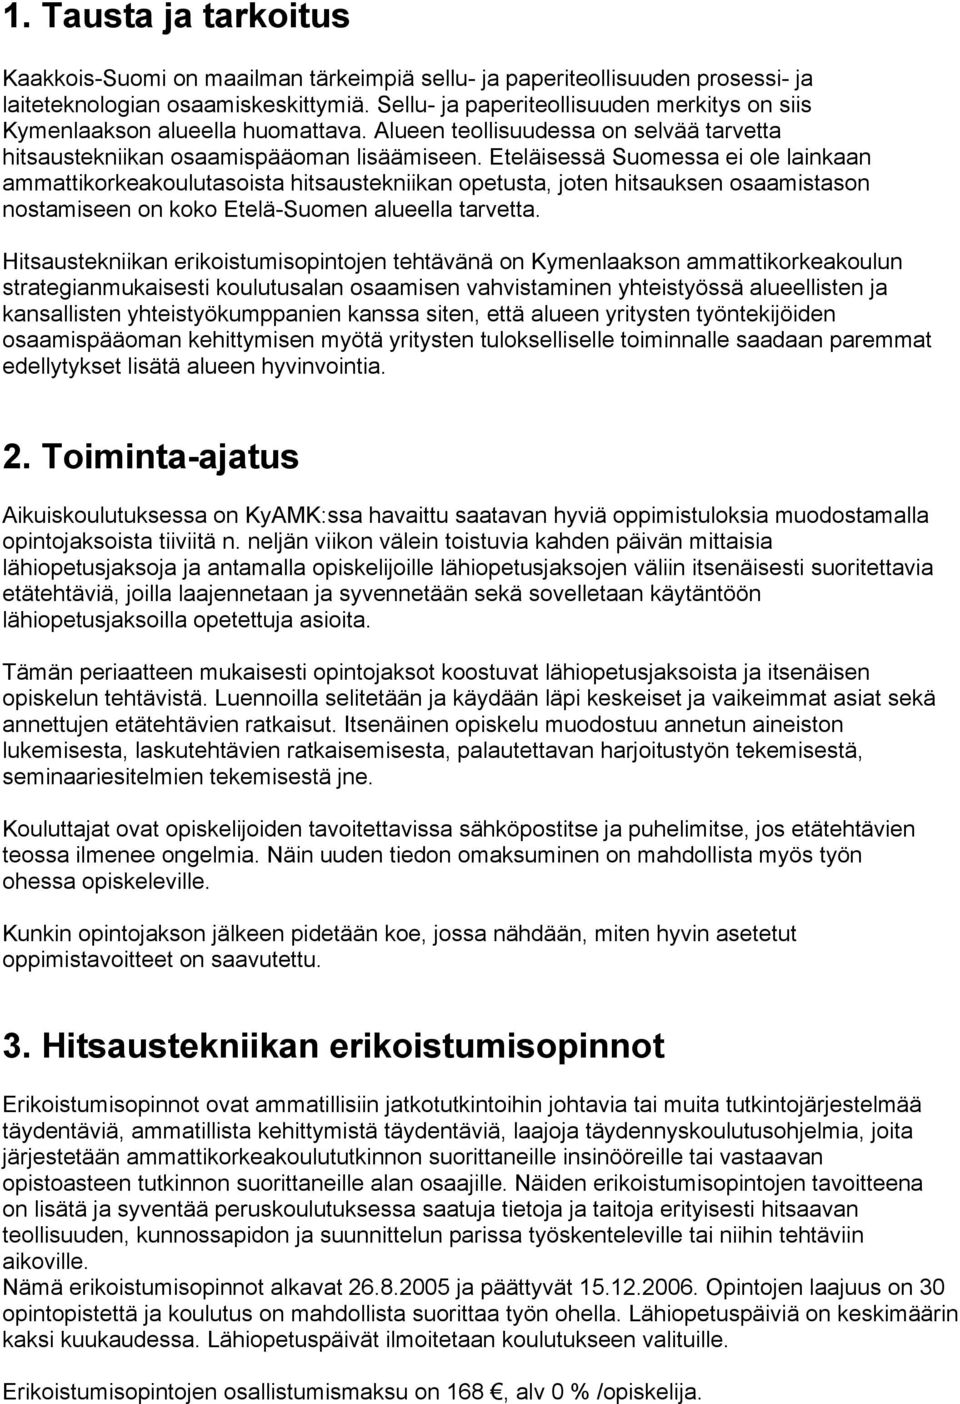 Eteläisessä Suomessa ei ole lainkaan ammattikorkeakoulutasoista hitsaustekniikan opetusta, joten hitsauksen osaamistason nostamiseen on koko Etelä-Suomen alueella tarvetta.